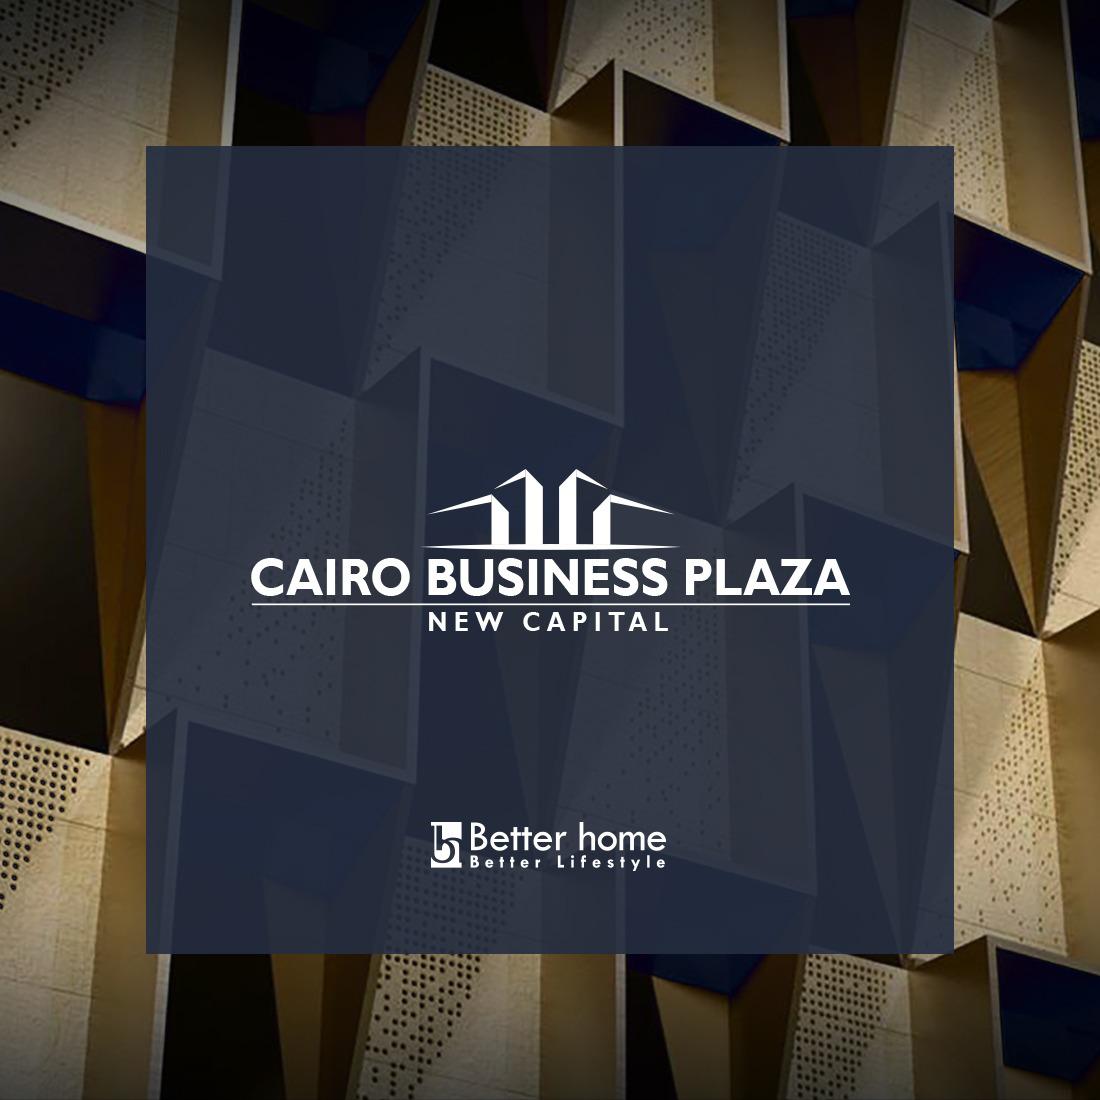 كايرو بزنس بلازا من بترهوم | Cairo Business PLAZA